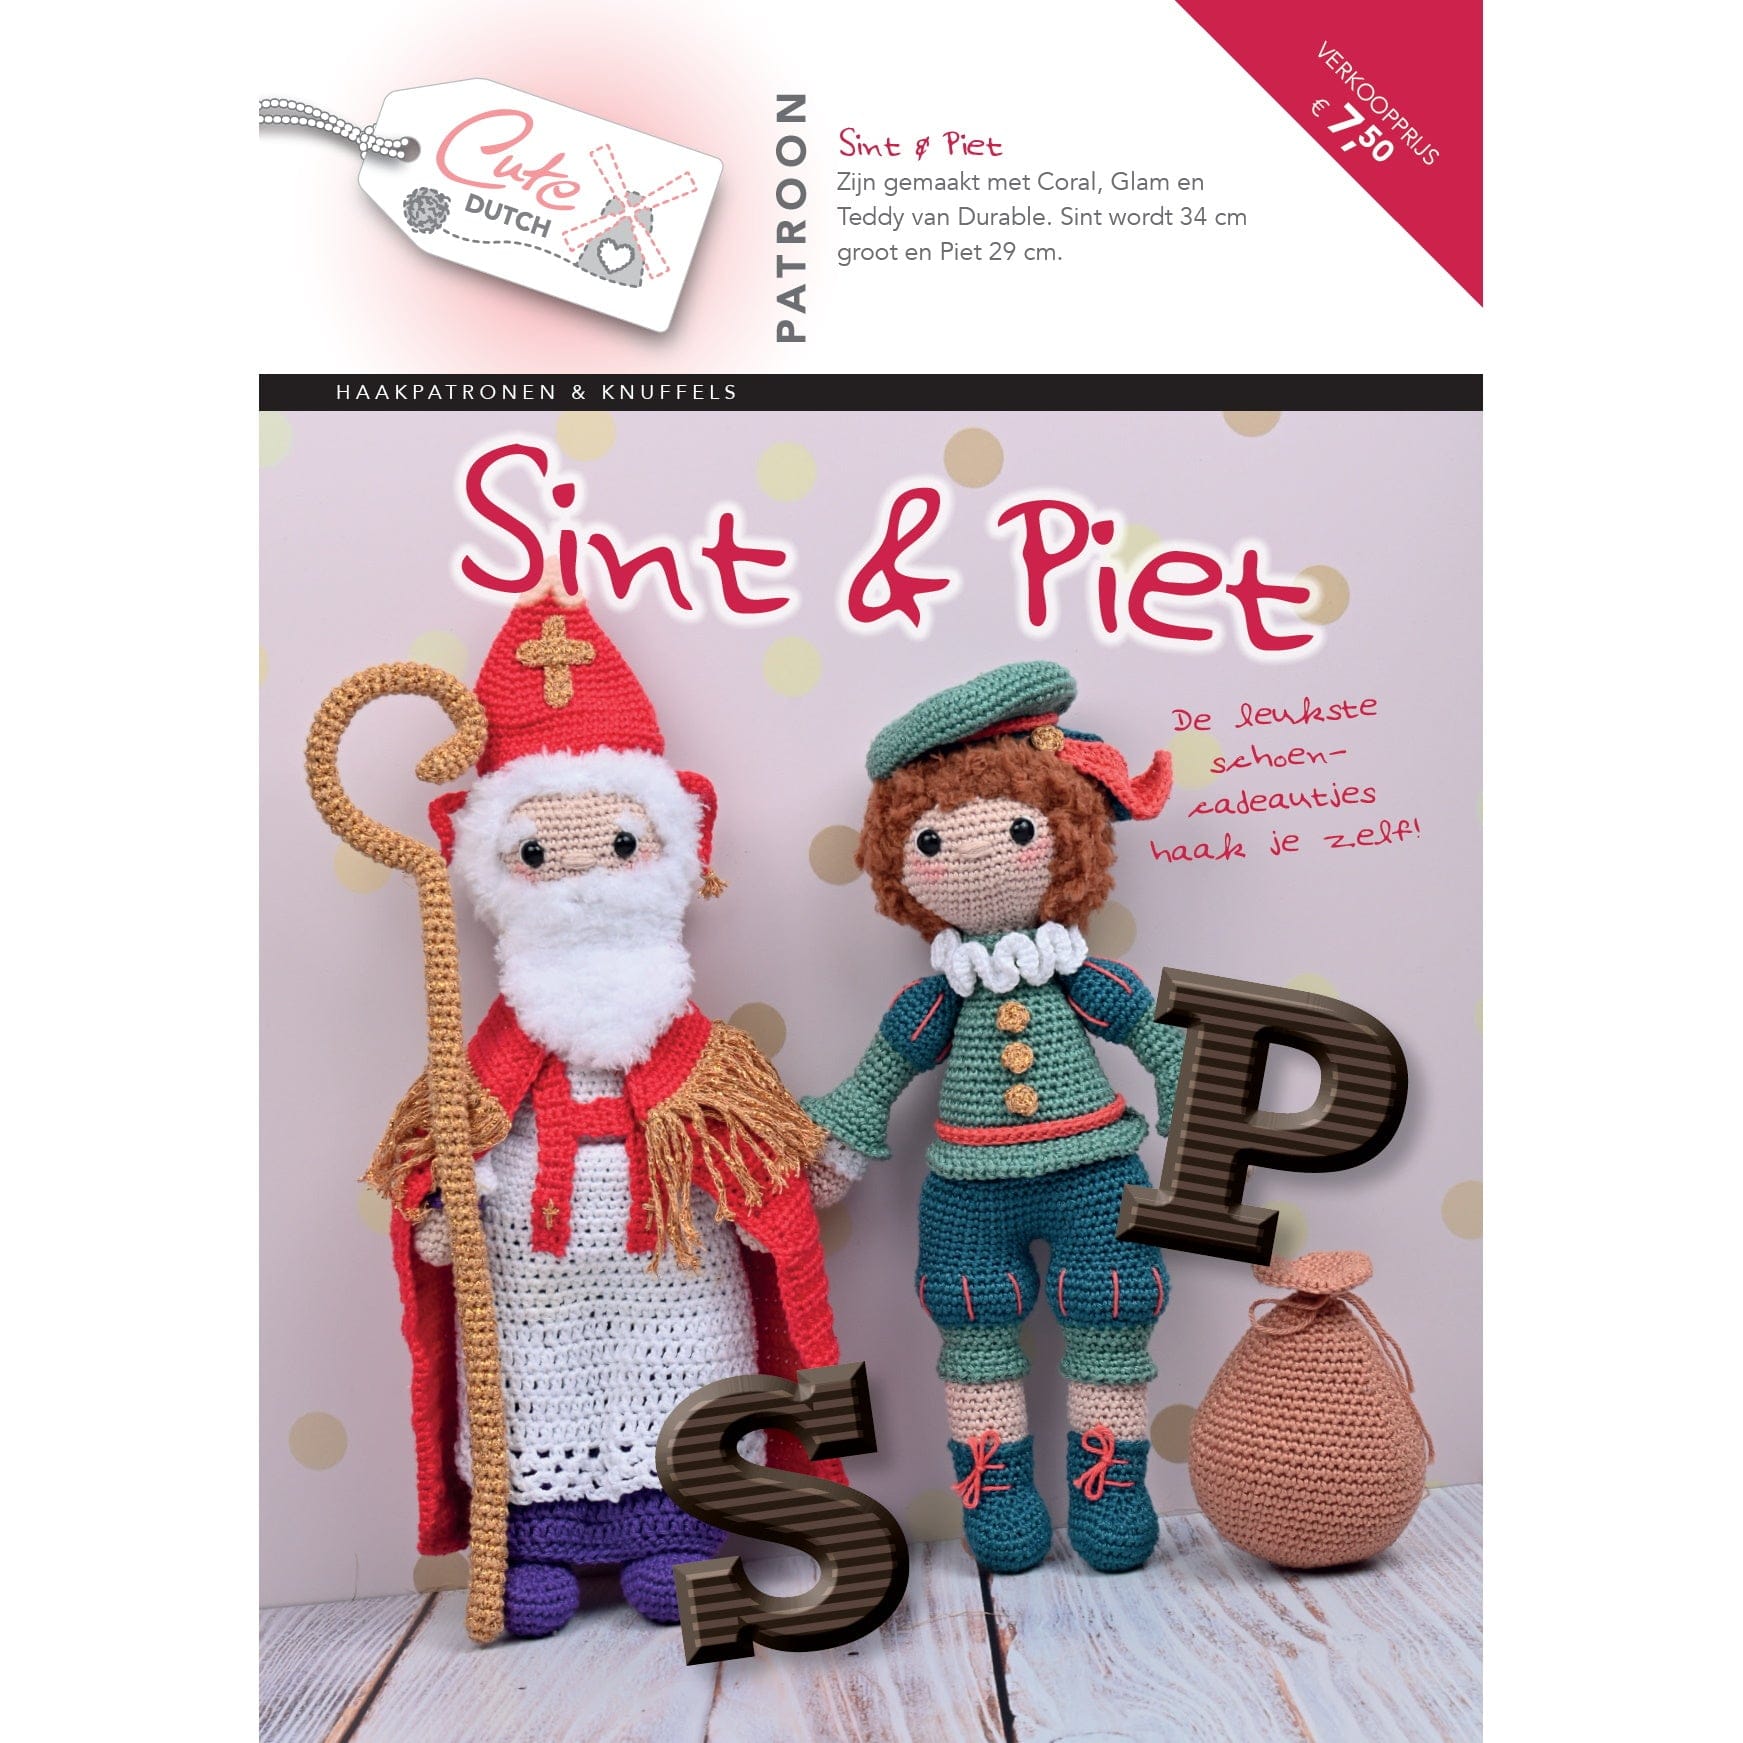 Vooruitgang Zonder hoofd volgens CuteDutch - Patroonboekje Sint & Piet | CuteDutch